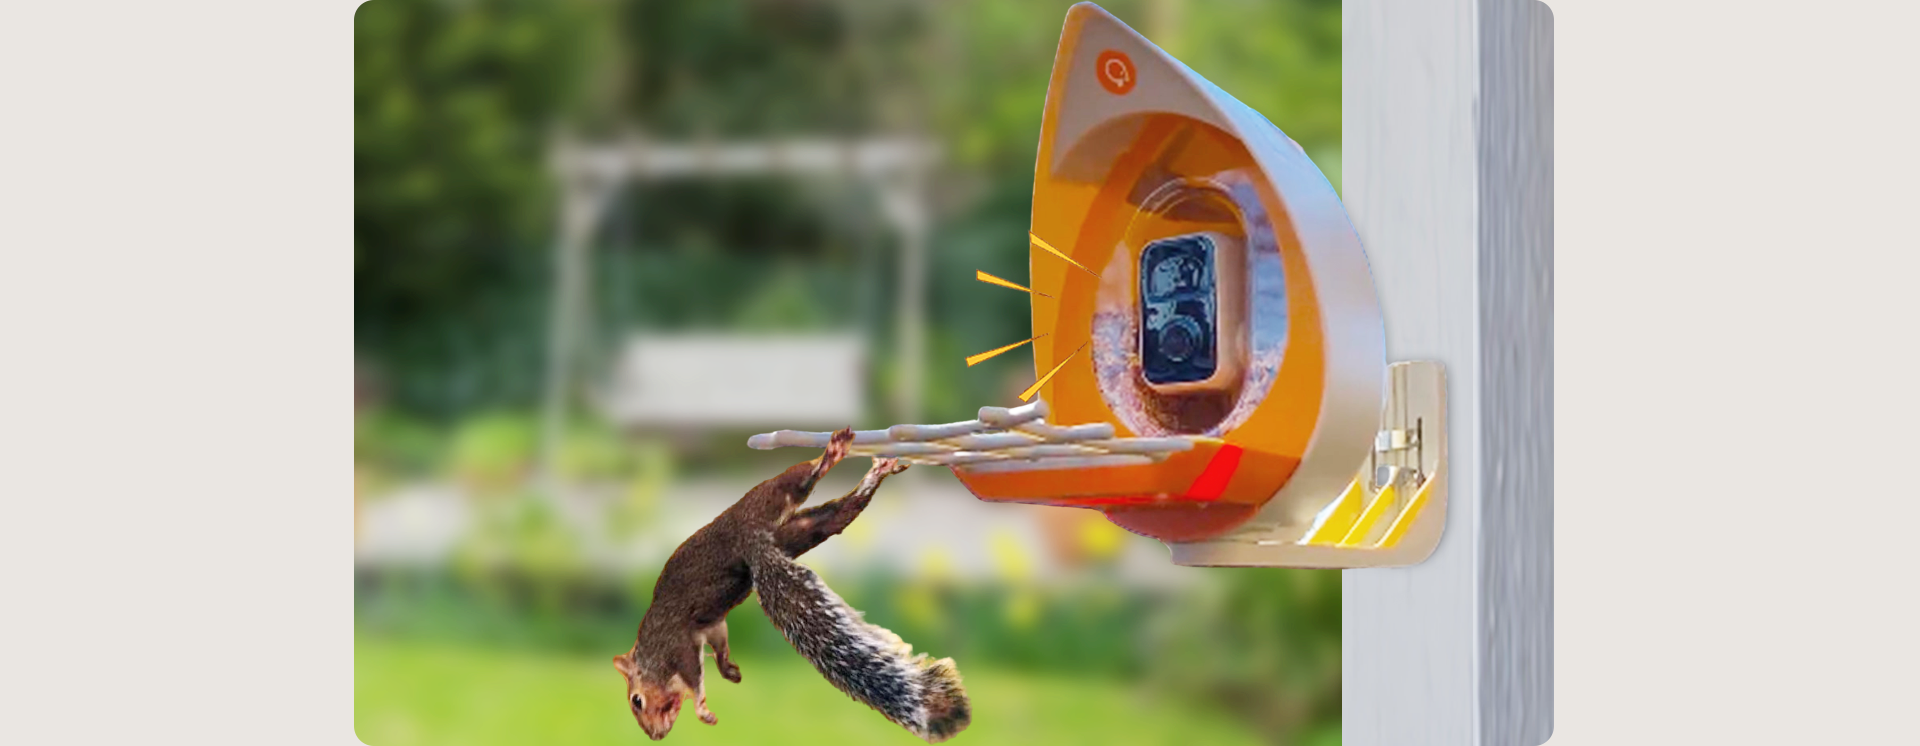 PeckPerk_Smart_Bird_Feeder_Keep squirrels away